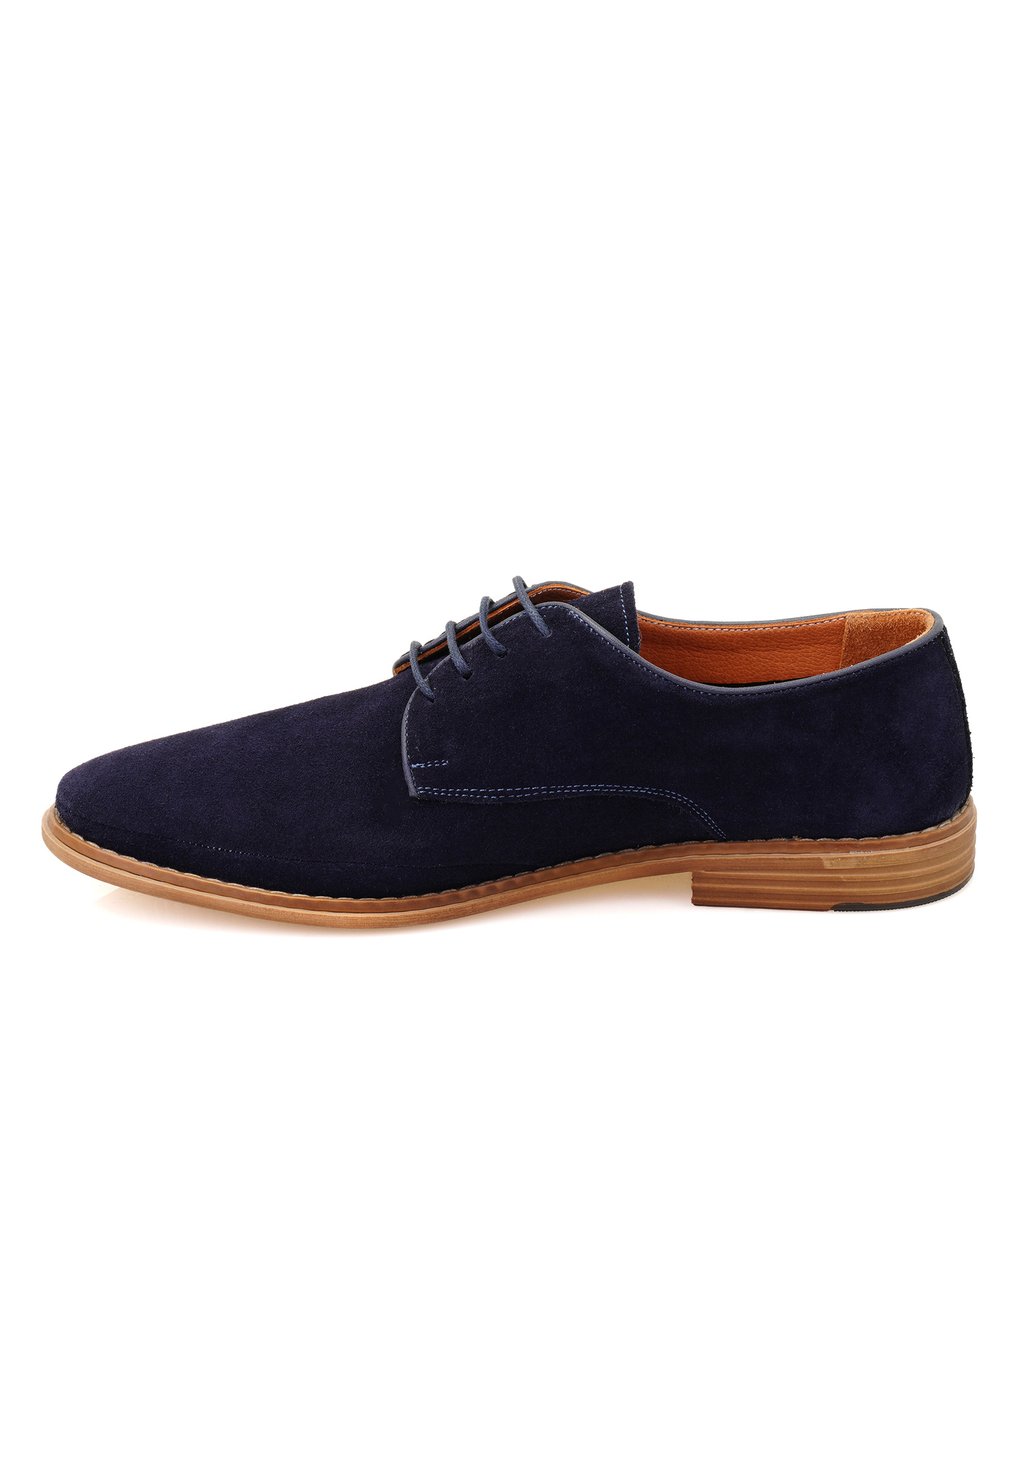 Спортивные туфли на шнуровке Desa, цвет dark blue спортивные туфли на шнуровке simone comfort bugatti цвет dark blue